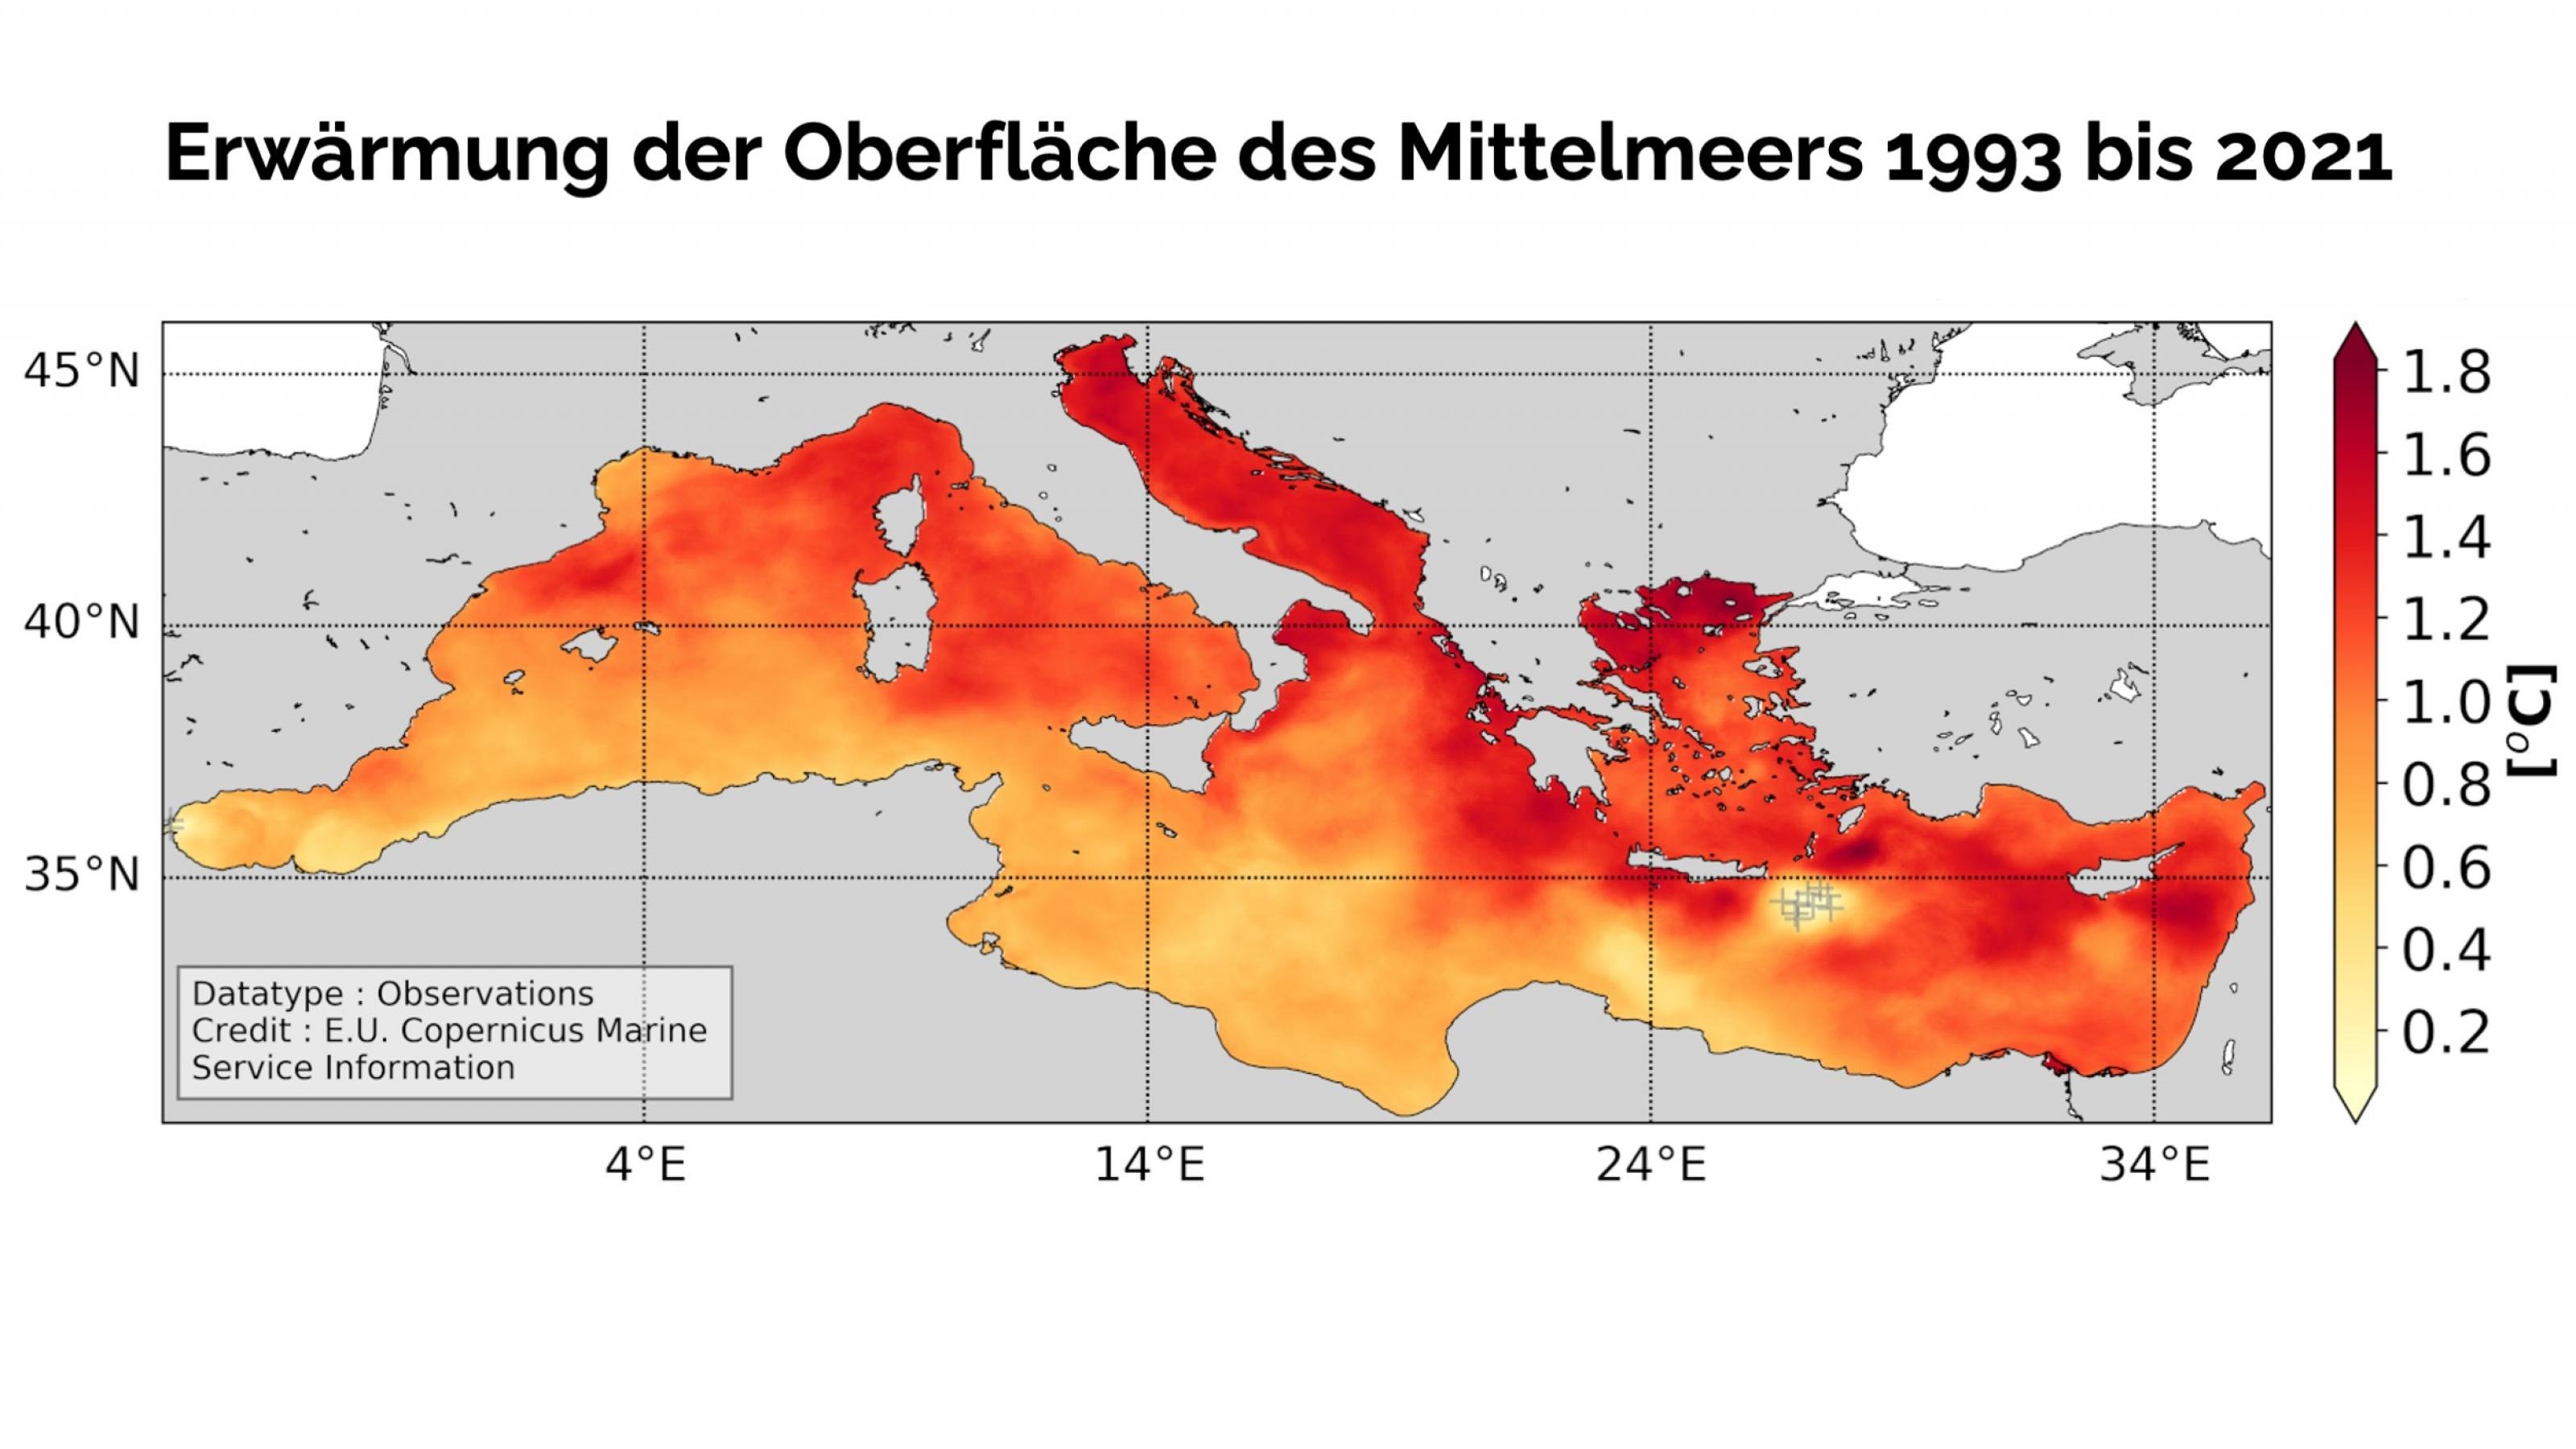 Landkarte des Mittelmeers mit verschiedenen Graden von Erwärmung zwischen 0 und 1,6 Grad. Besonders stark haben sich Adria und Levante erwärmt, weniger das Wasser vor Nordafrika.